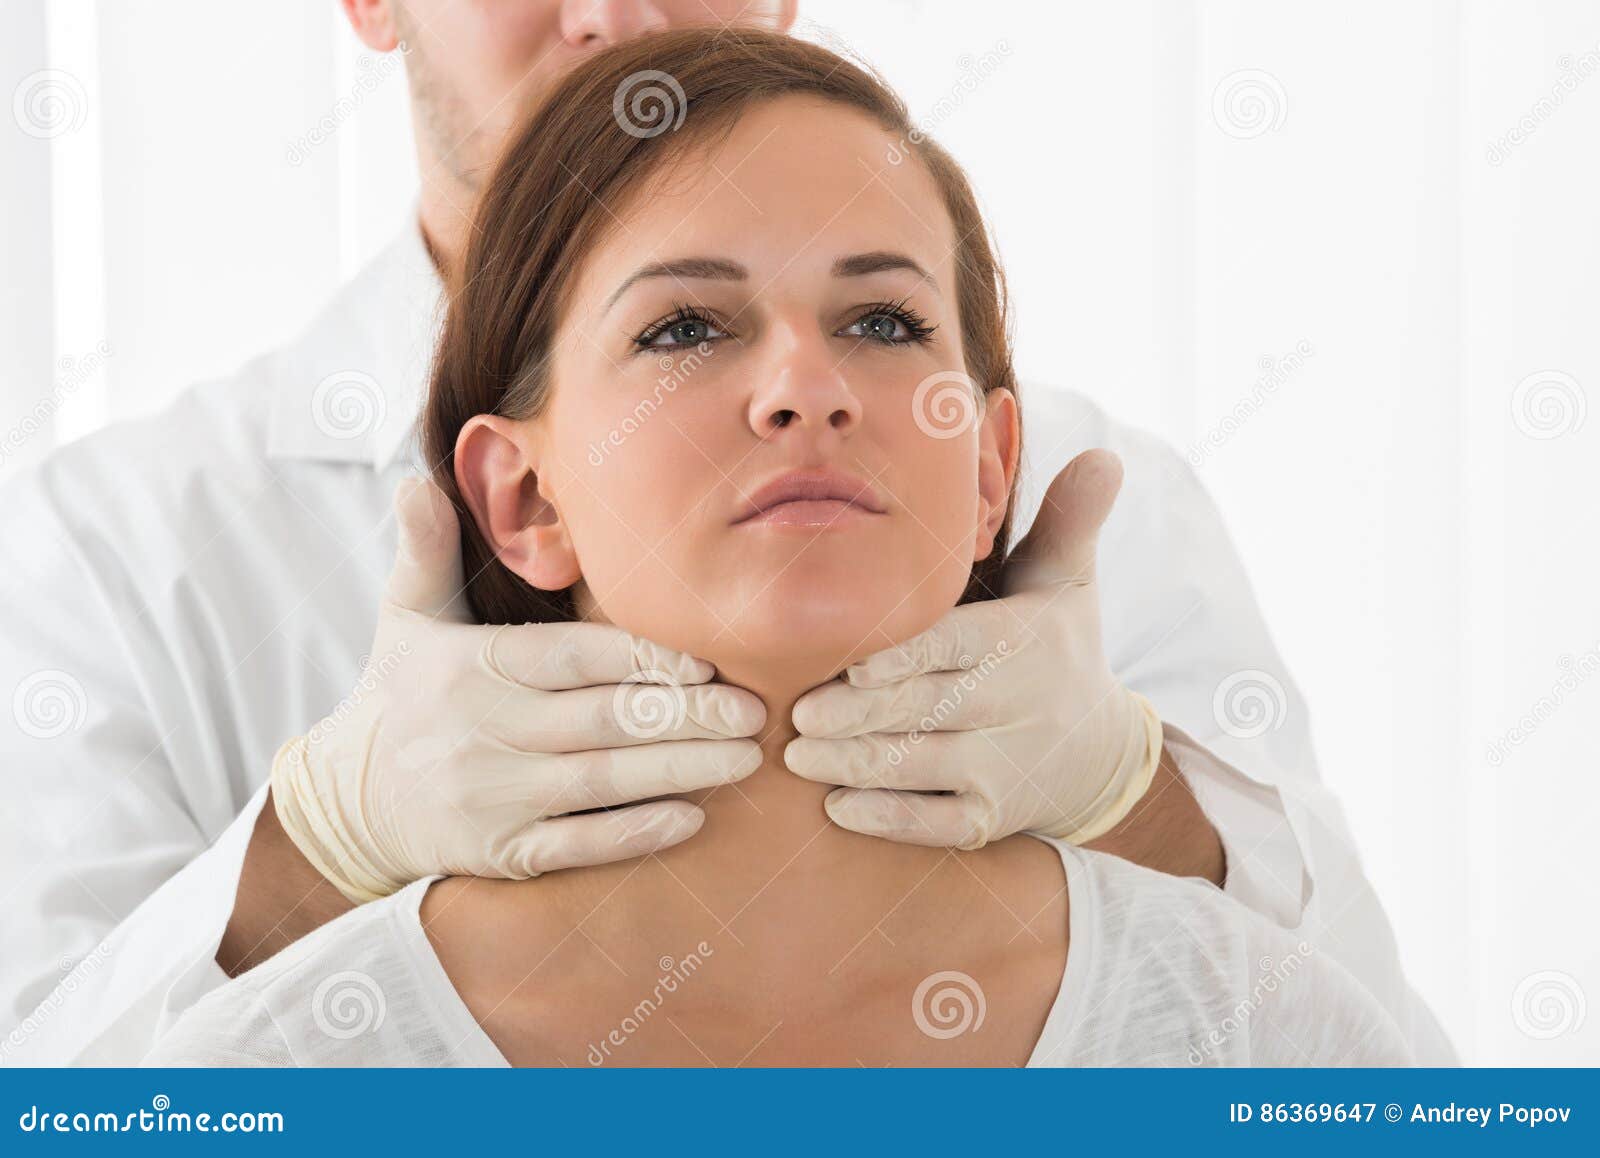 woman getting thyroid gland control